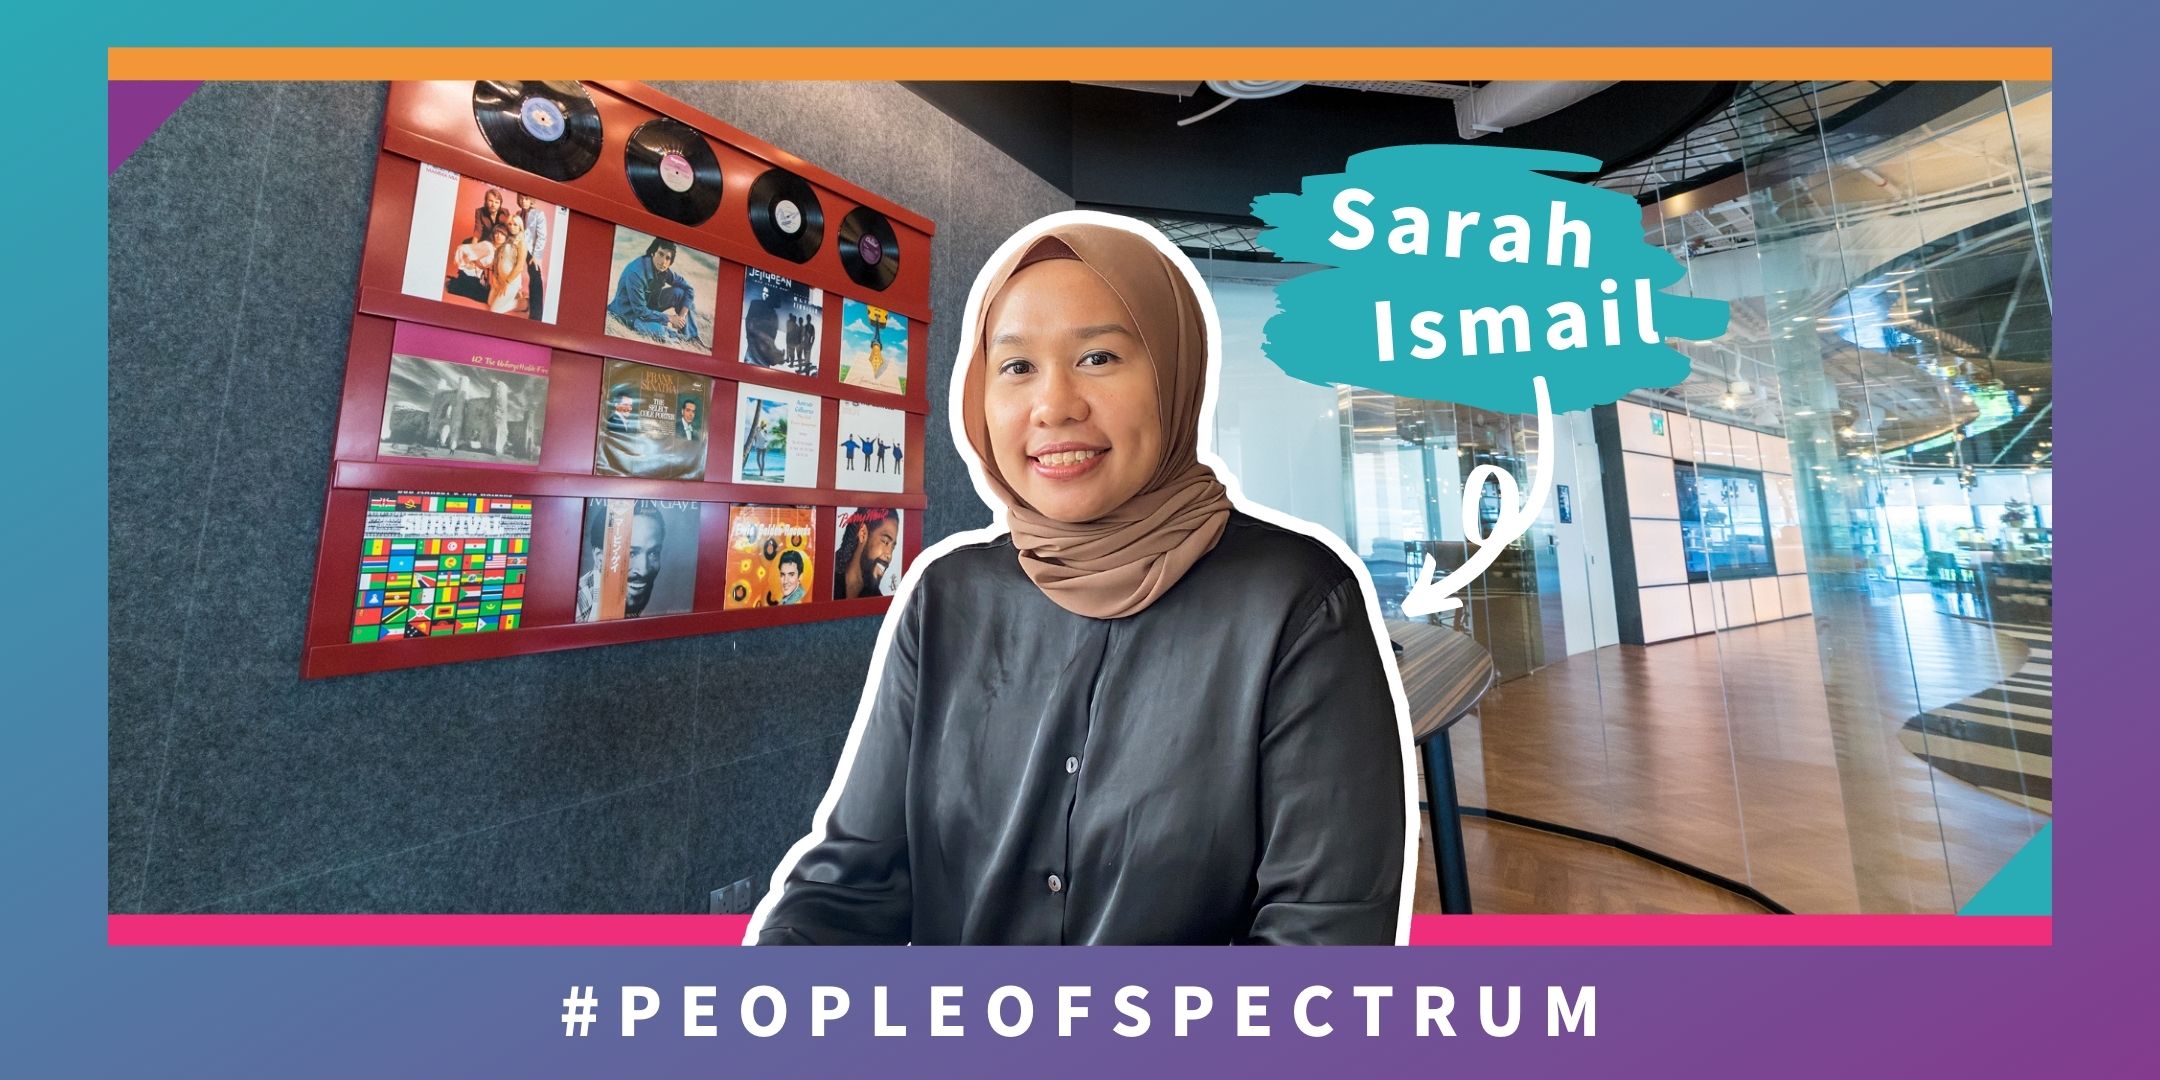 #PeopleofSPECTRUM - Sarah from Pinnacle